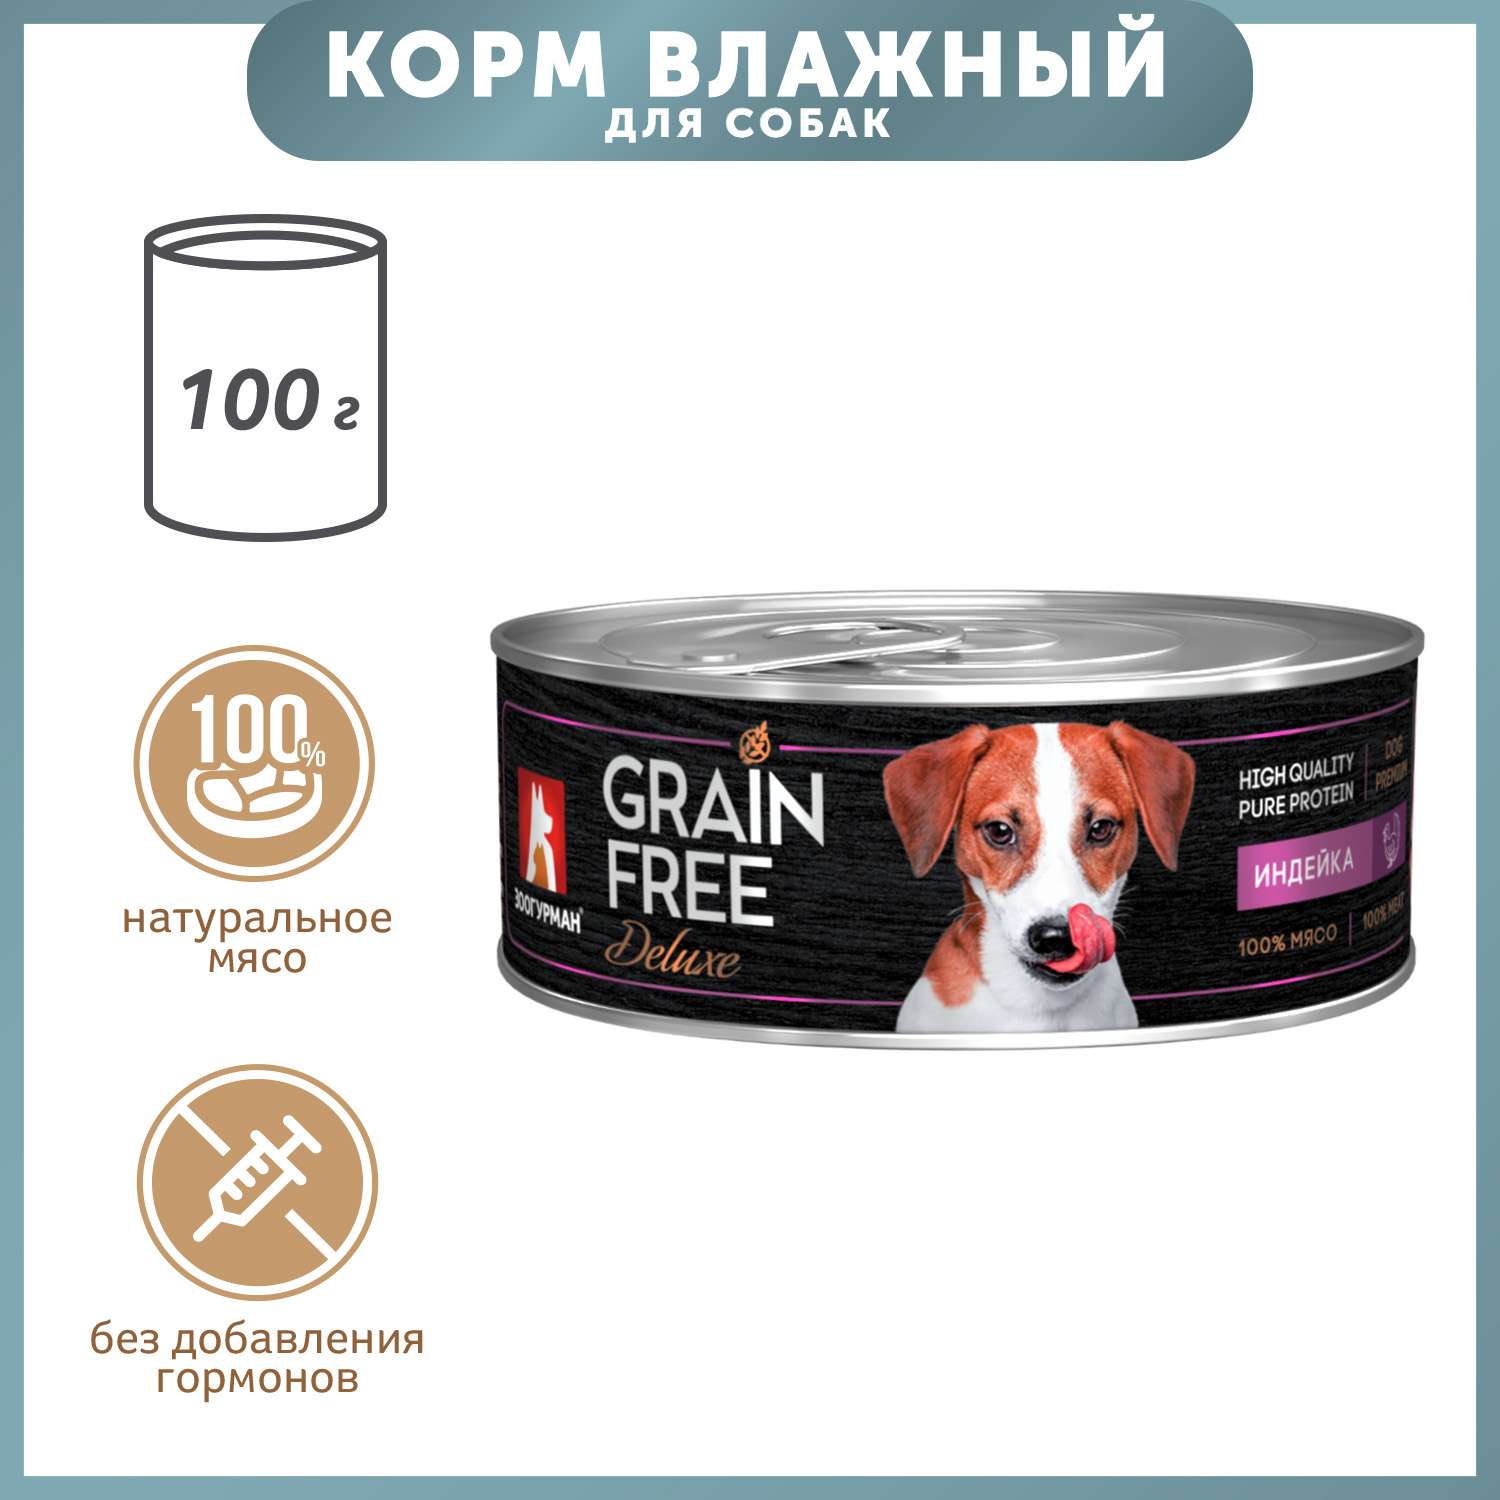 Корм для собак Зоогурман 100г Grain free индейка консервированный - фото 1